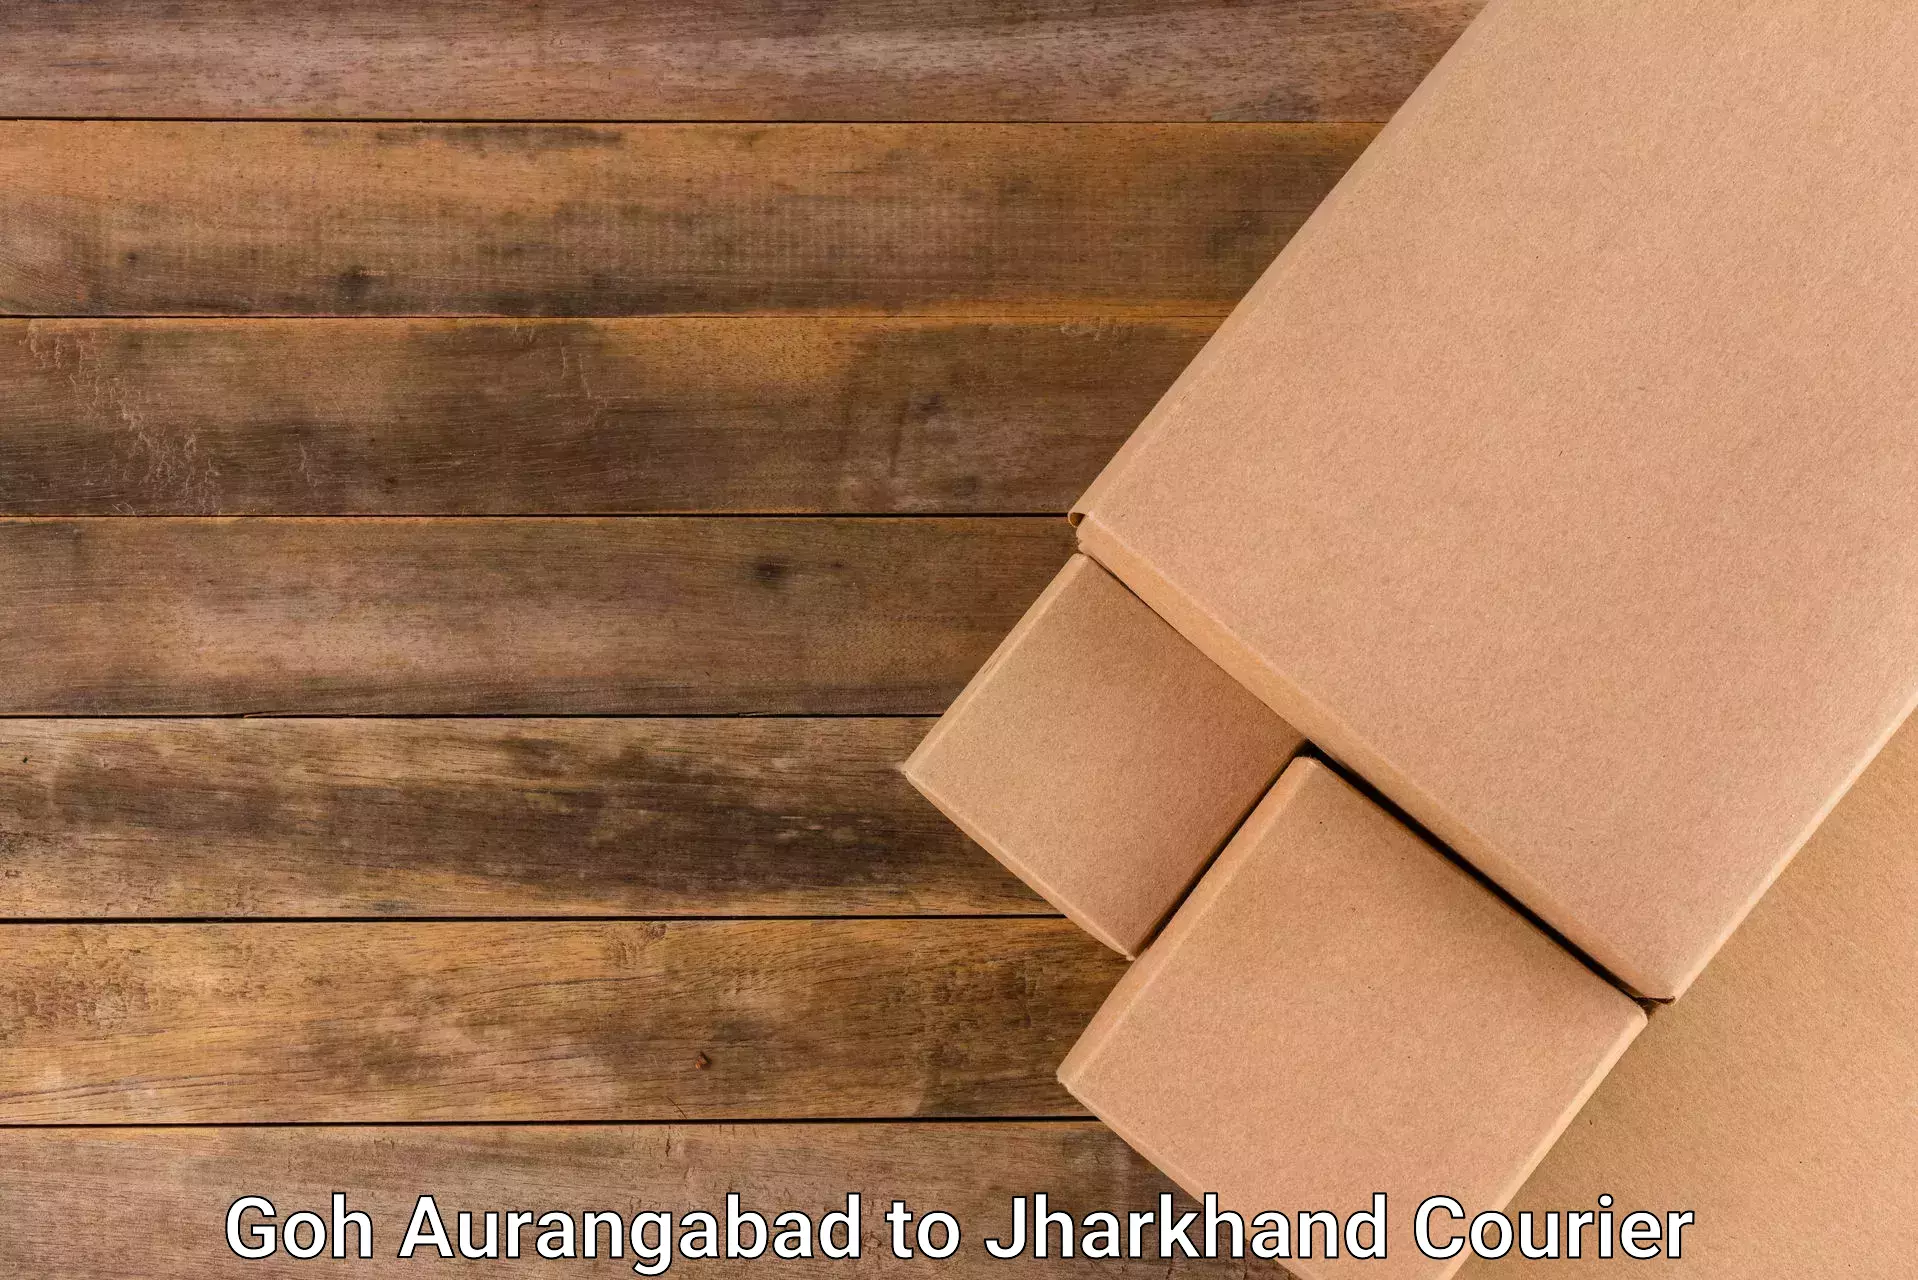 Reliable courier service Goh Aurangabad to Poreyahat